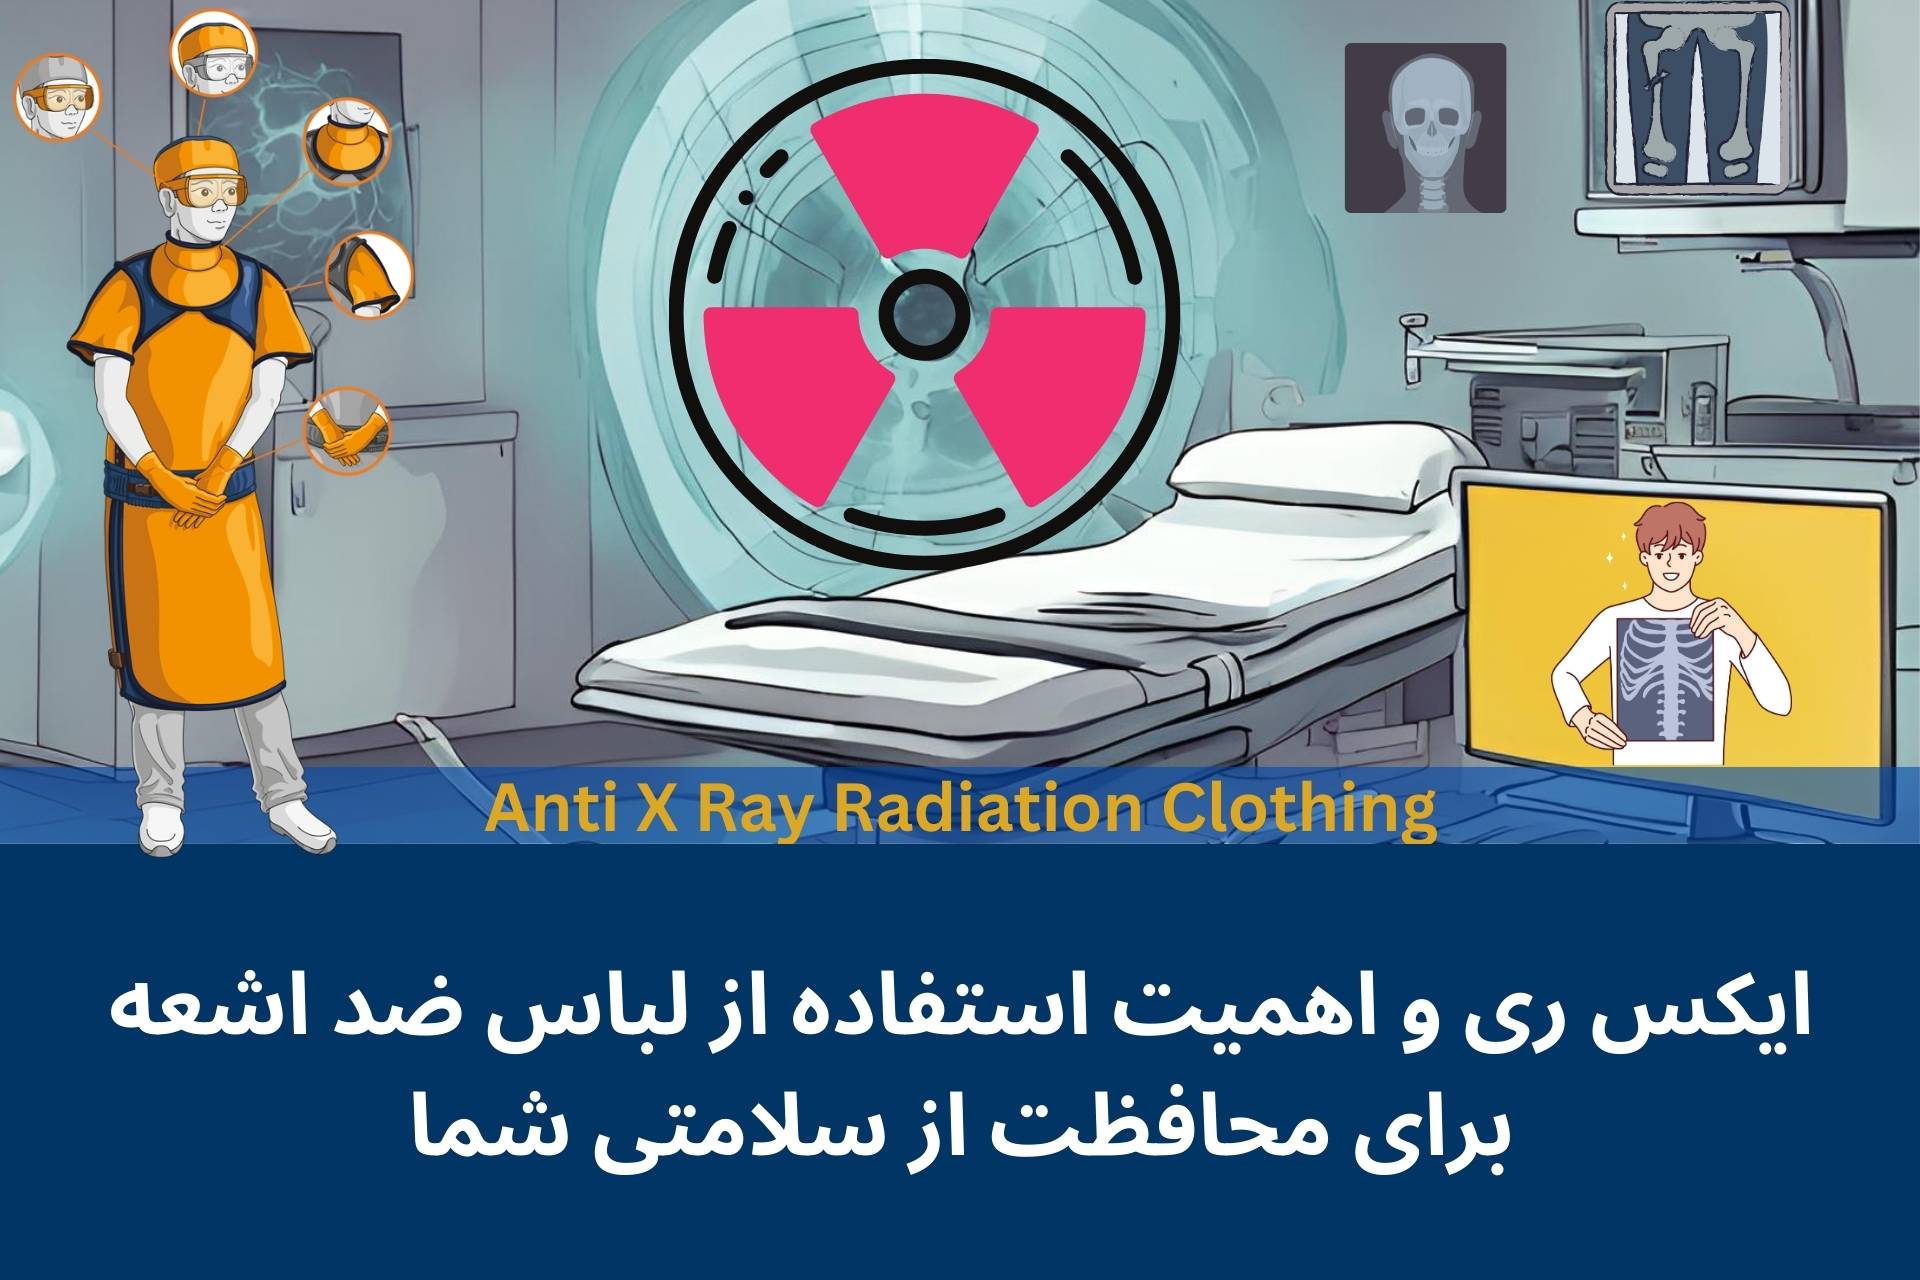 ایکس ری و اهمیت استفاده از لباس ضد اشعه ایکس برای محافظت از سلامتی شما